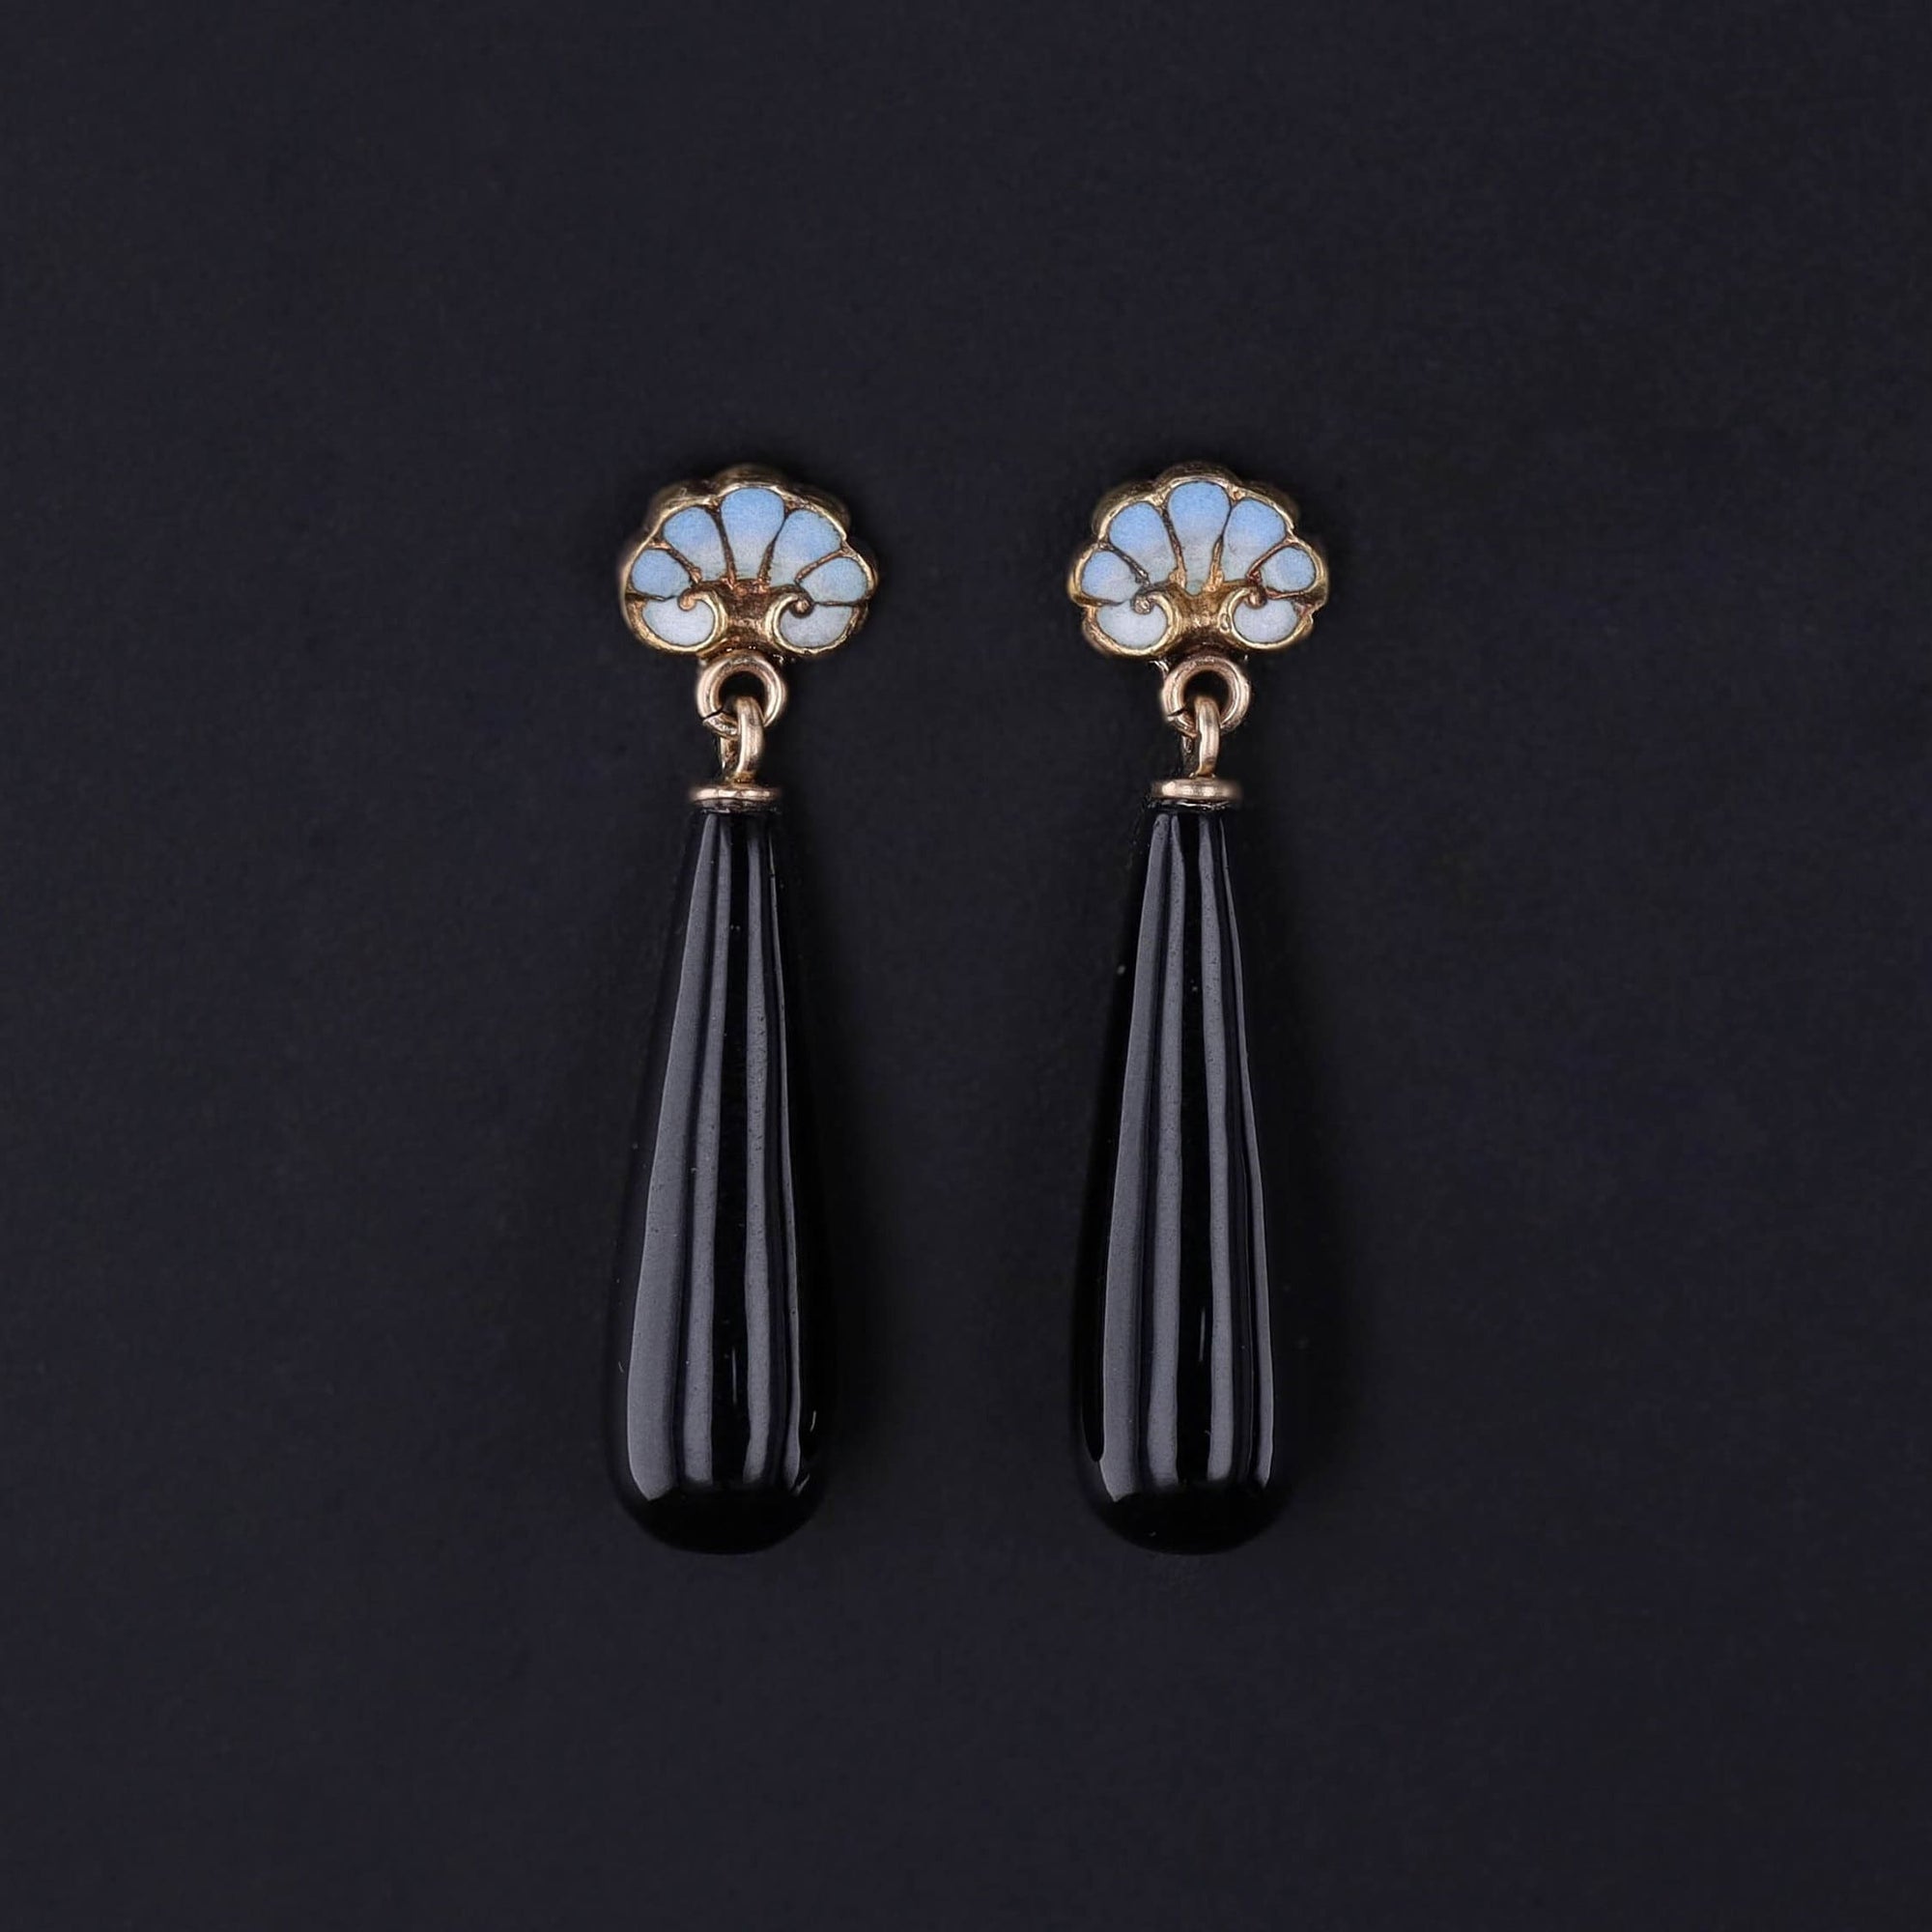 Antique Onyx & Enamel Earrings of 14k Gold